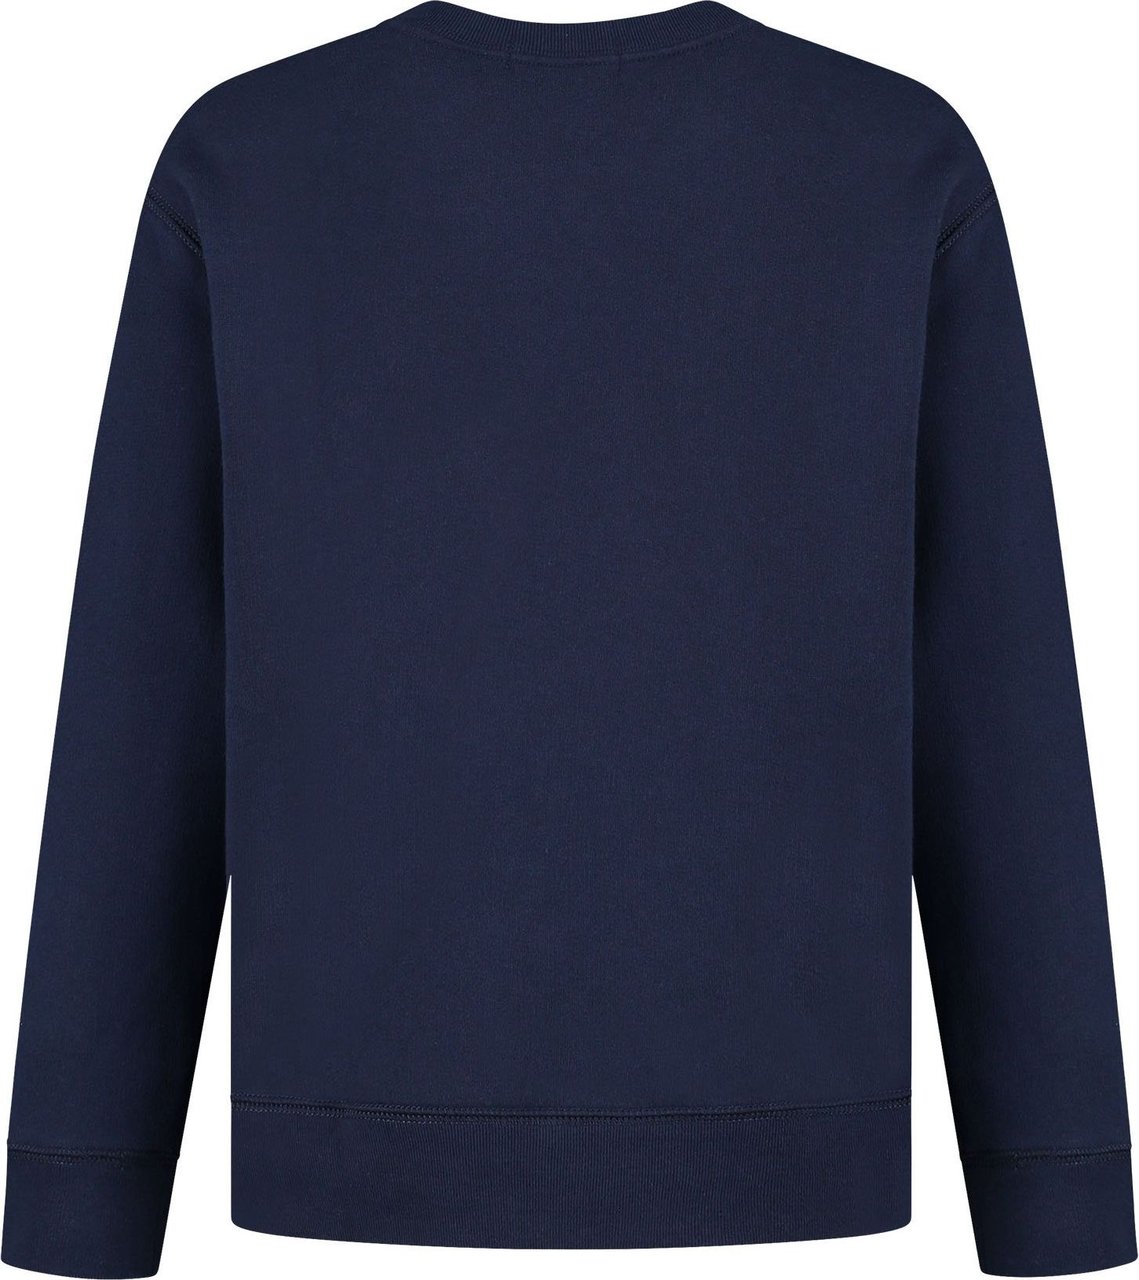 Ralph Lauren Sweatshirt Blauw